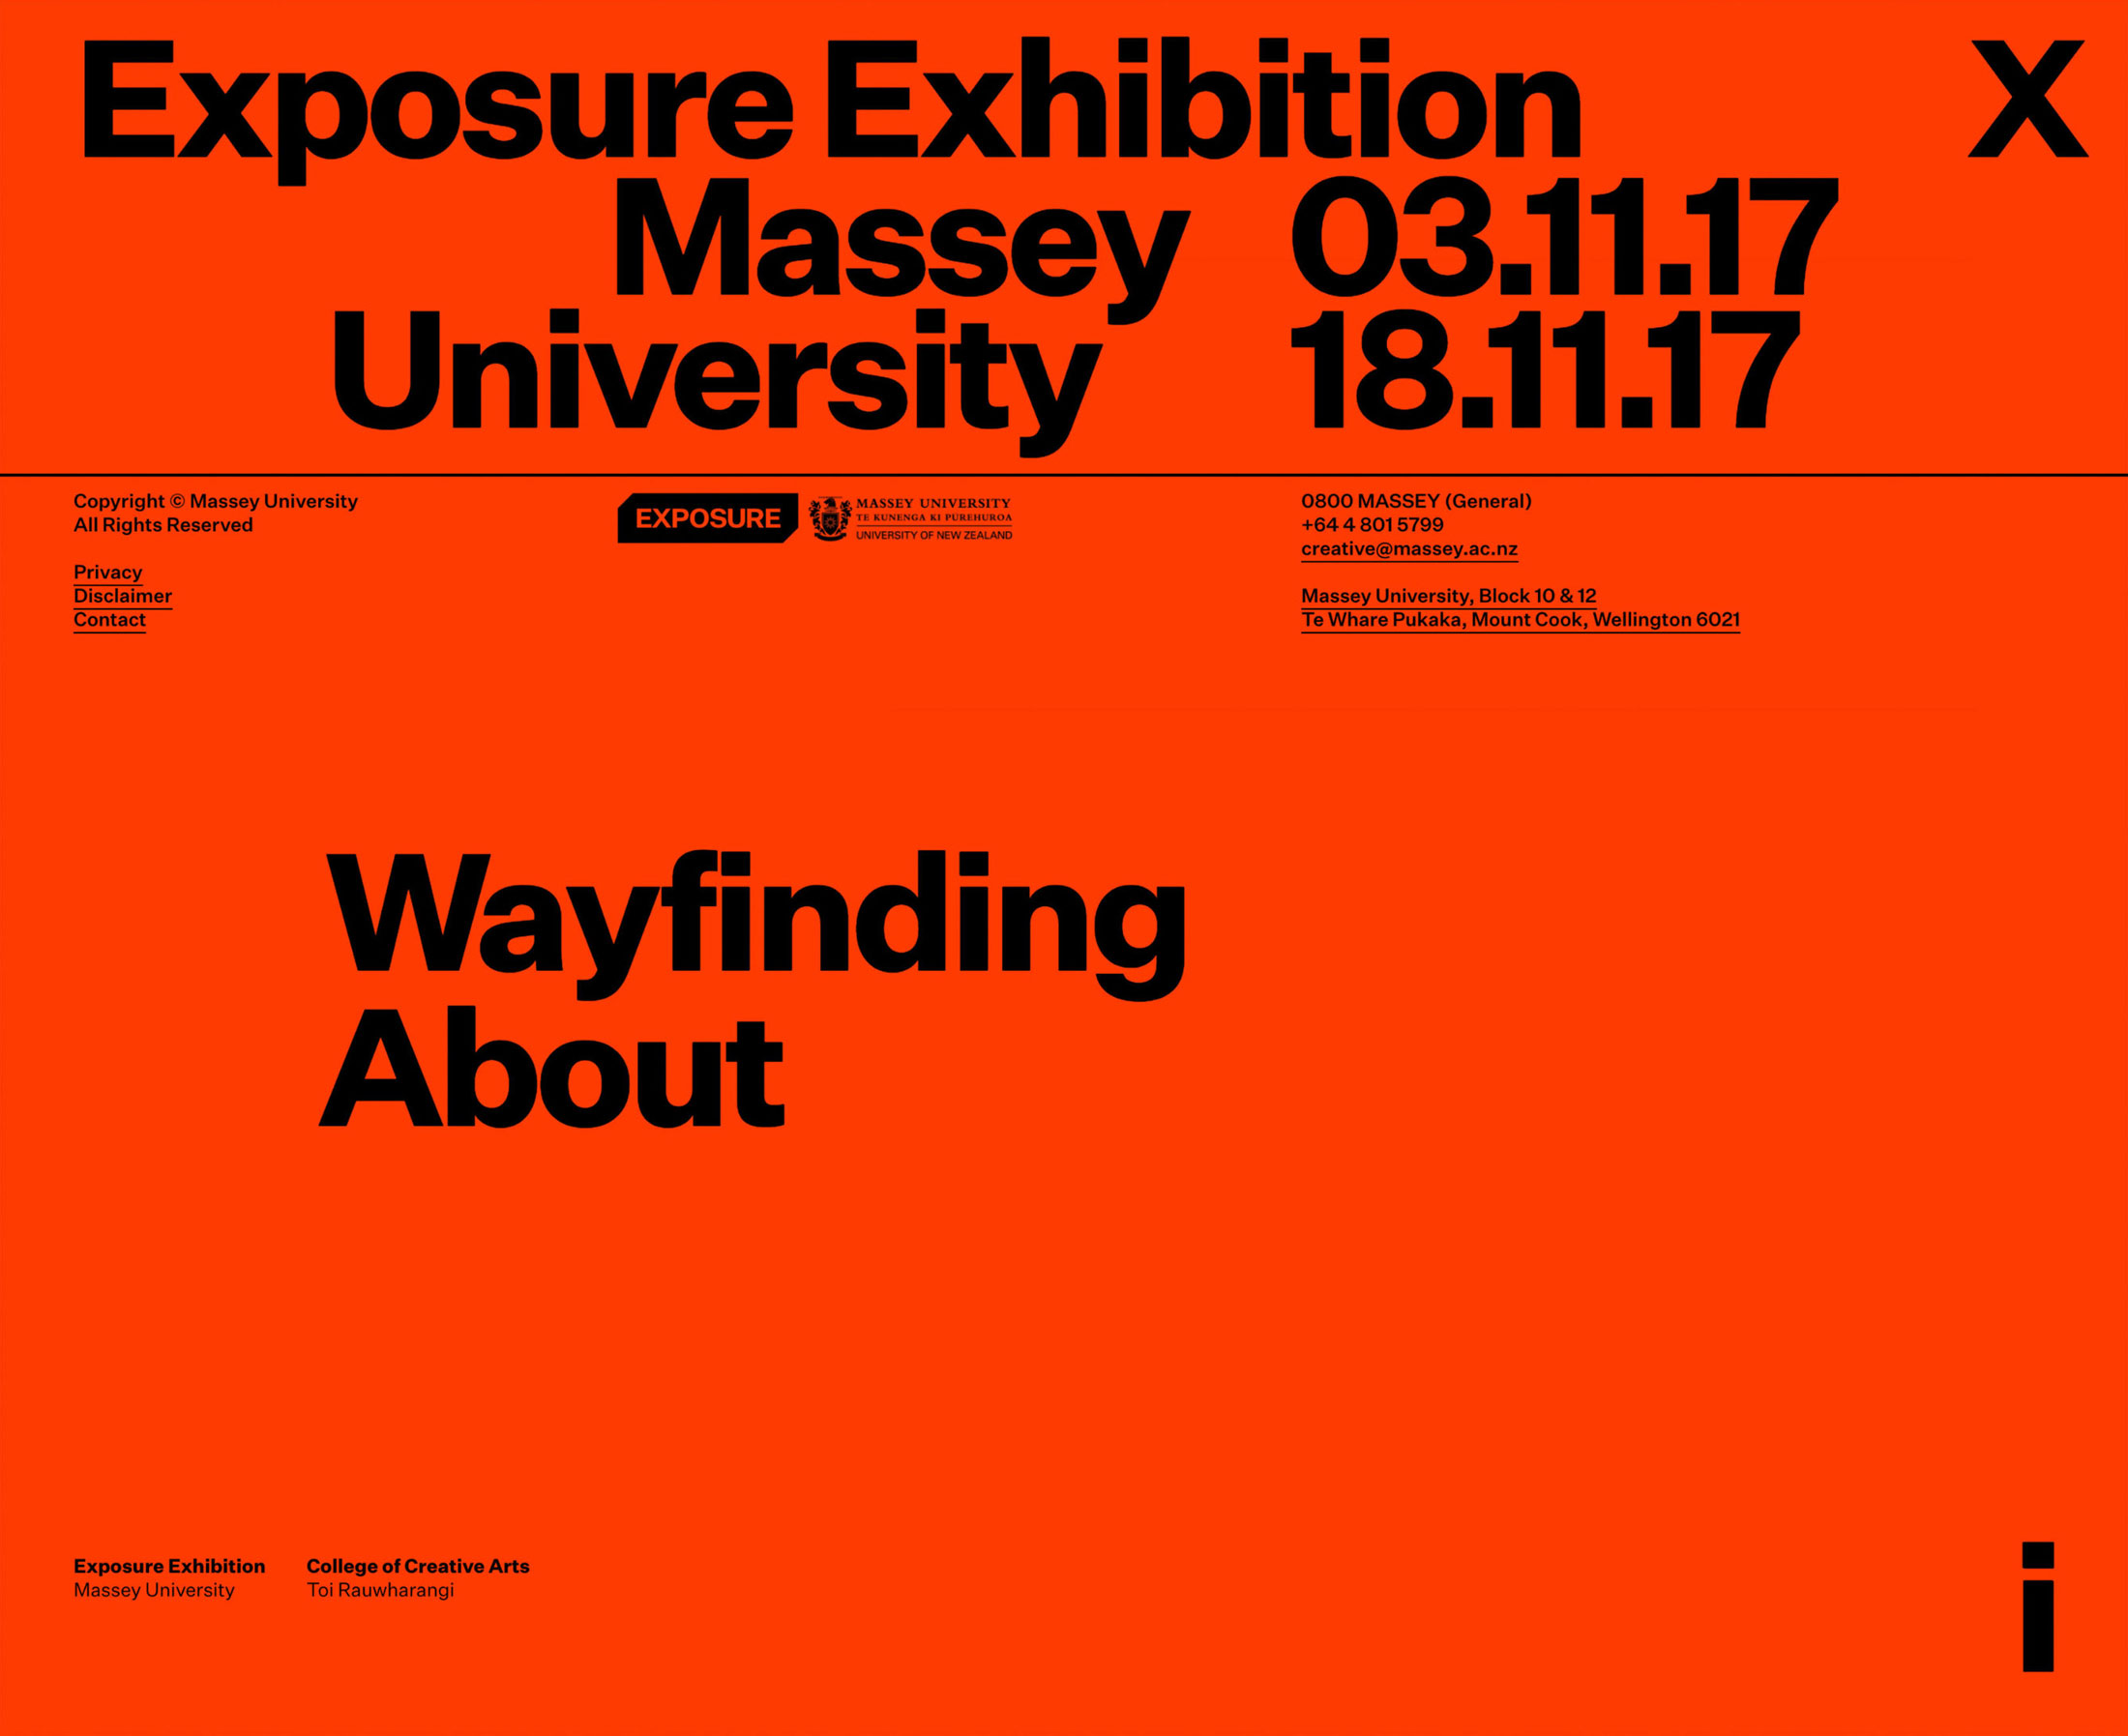 Exposure Exhibition website. Menu. Luke Hoban